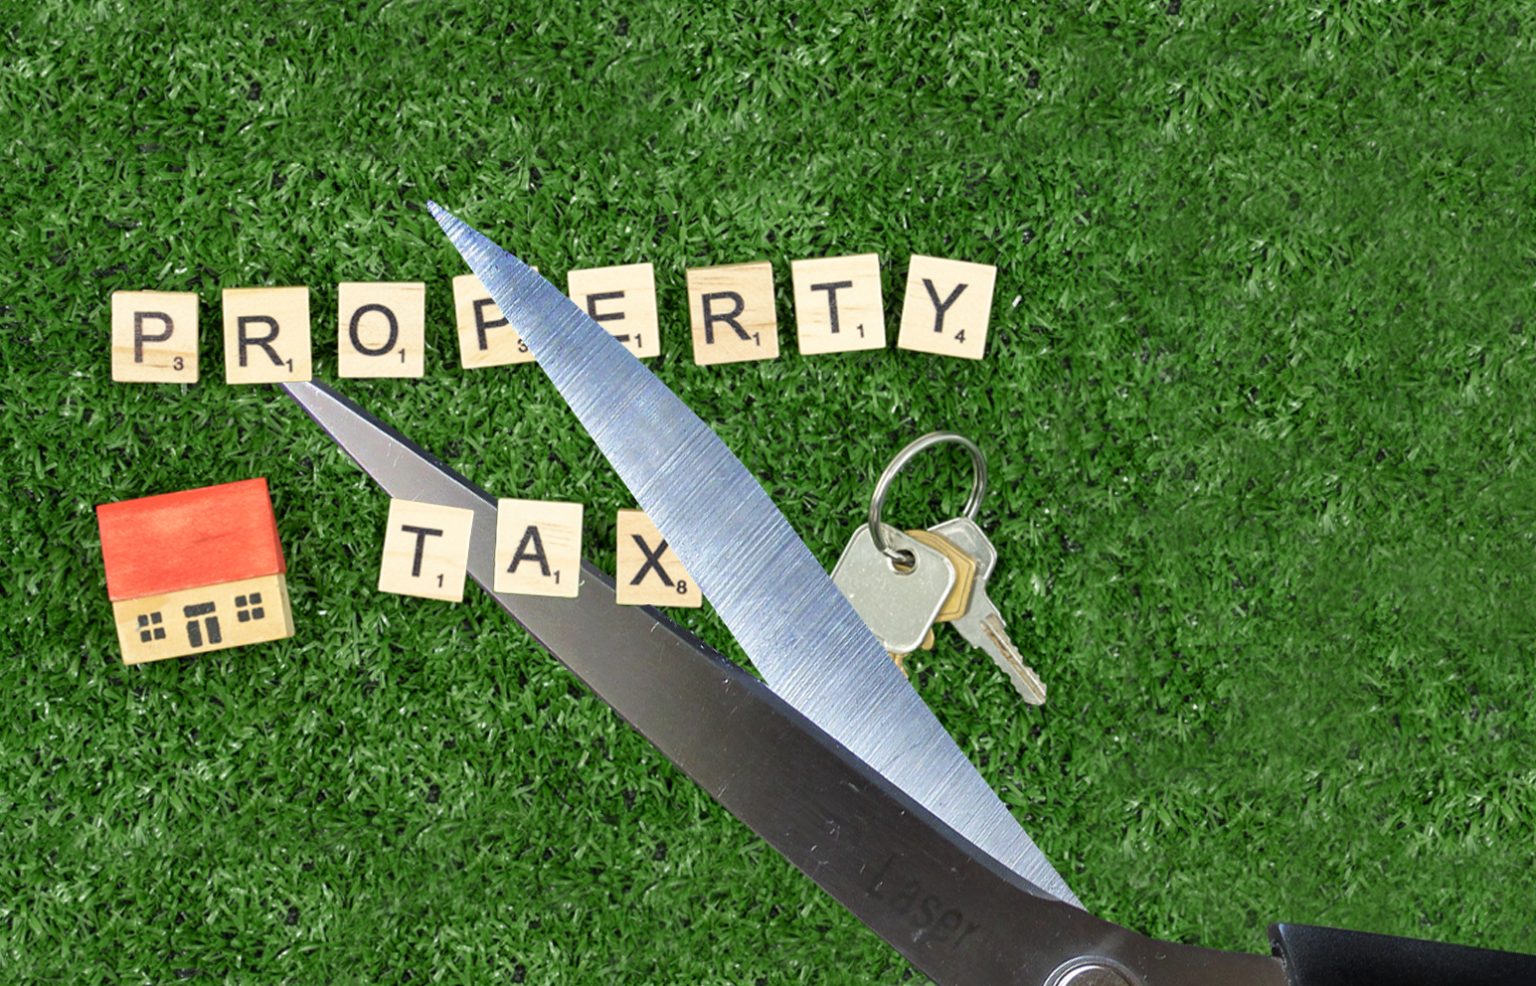 Property Tax Cut 1536x986 